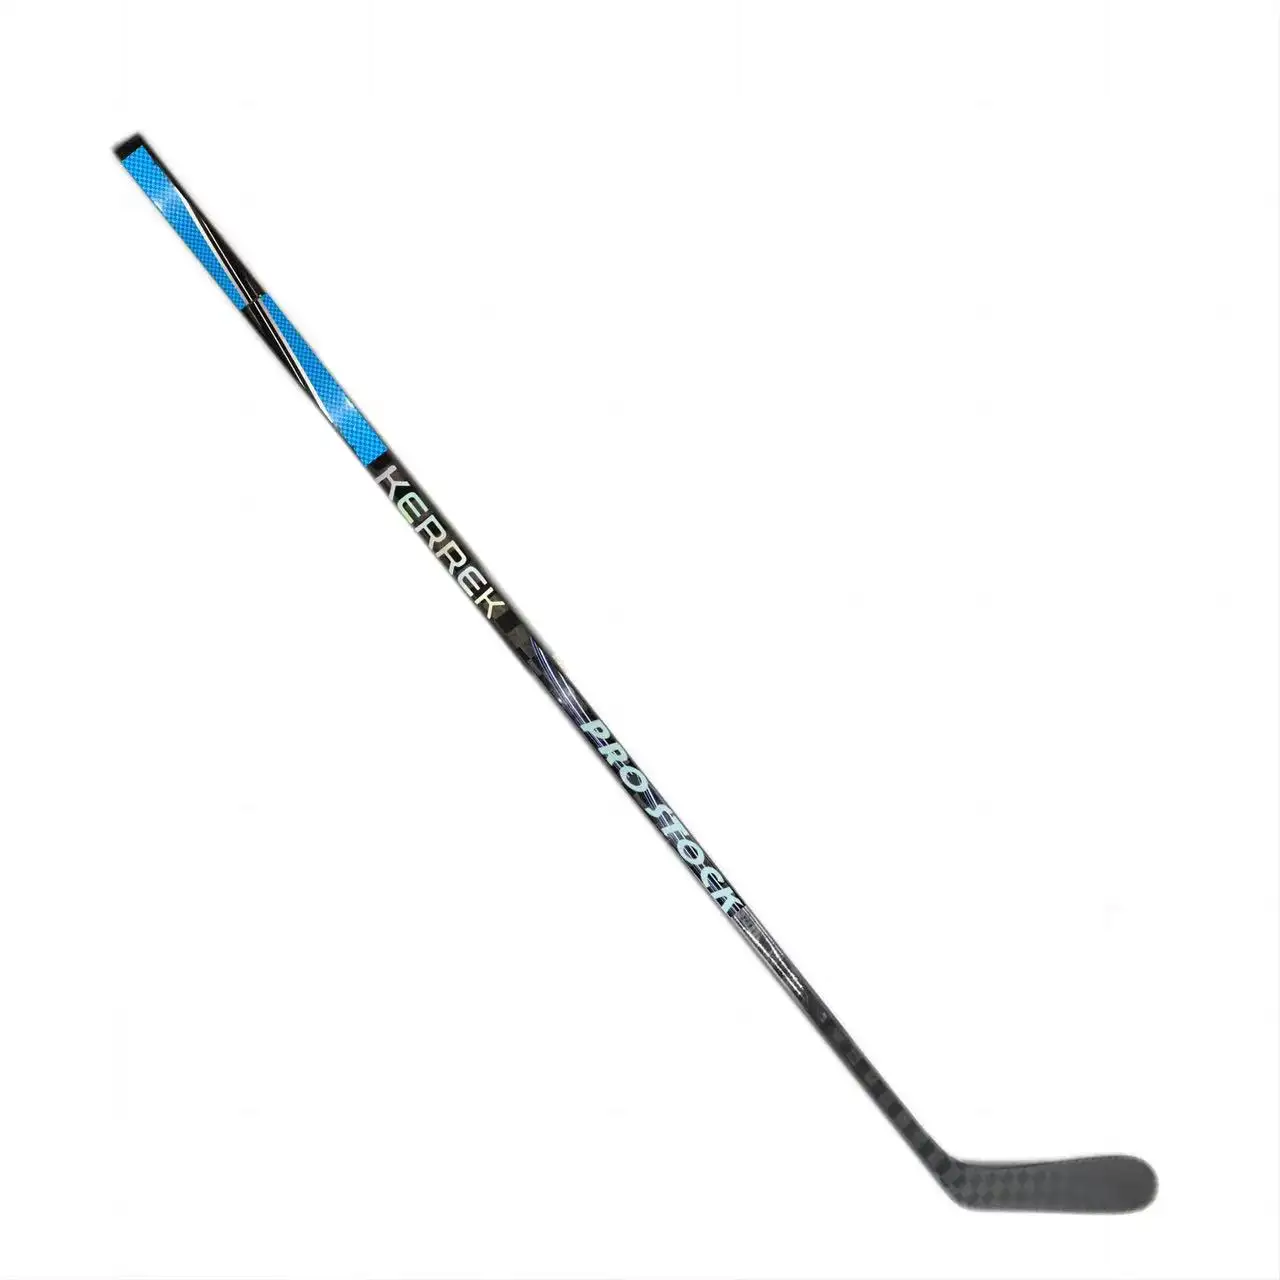 Nuovo Top Model marchio personalizzato in fibra di carbonio bastoni da Hockey su ghiaccio dalla fabbrica professionale della cina